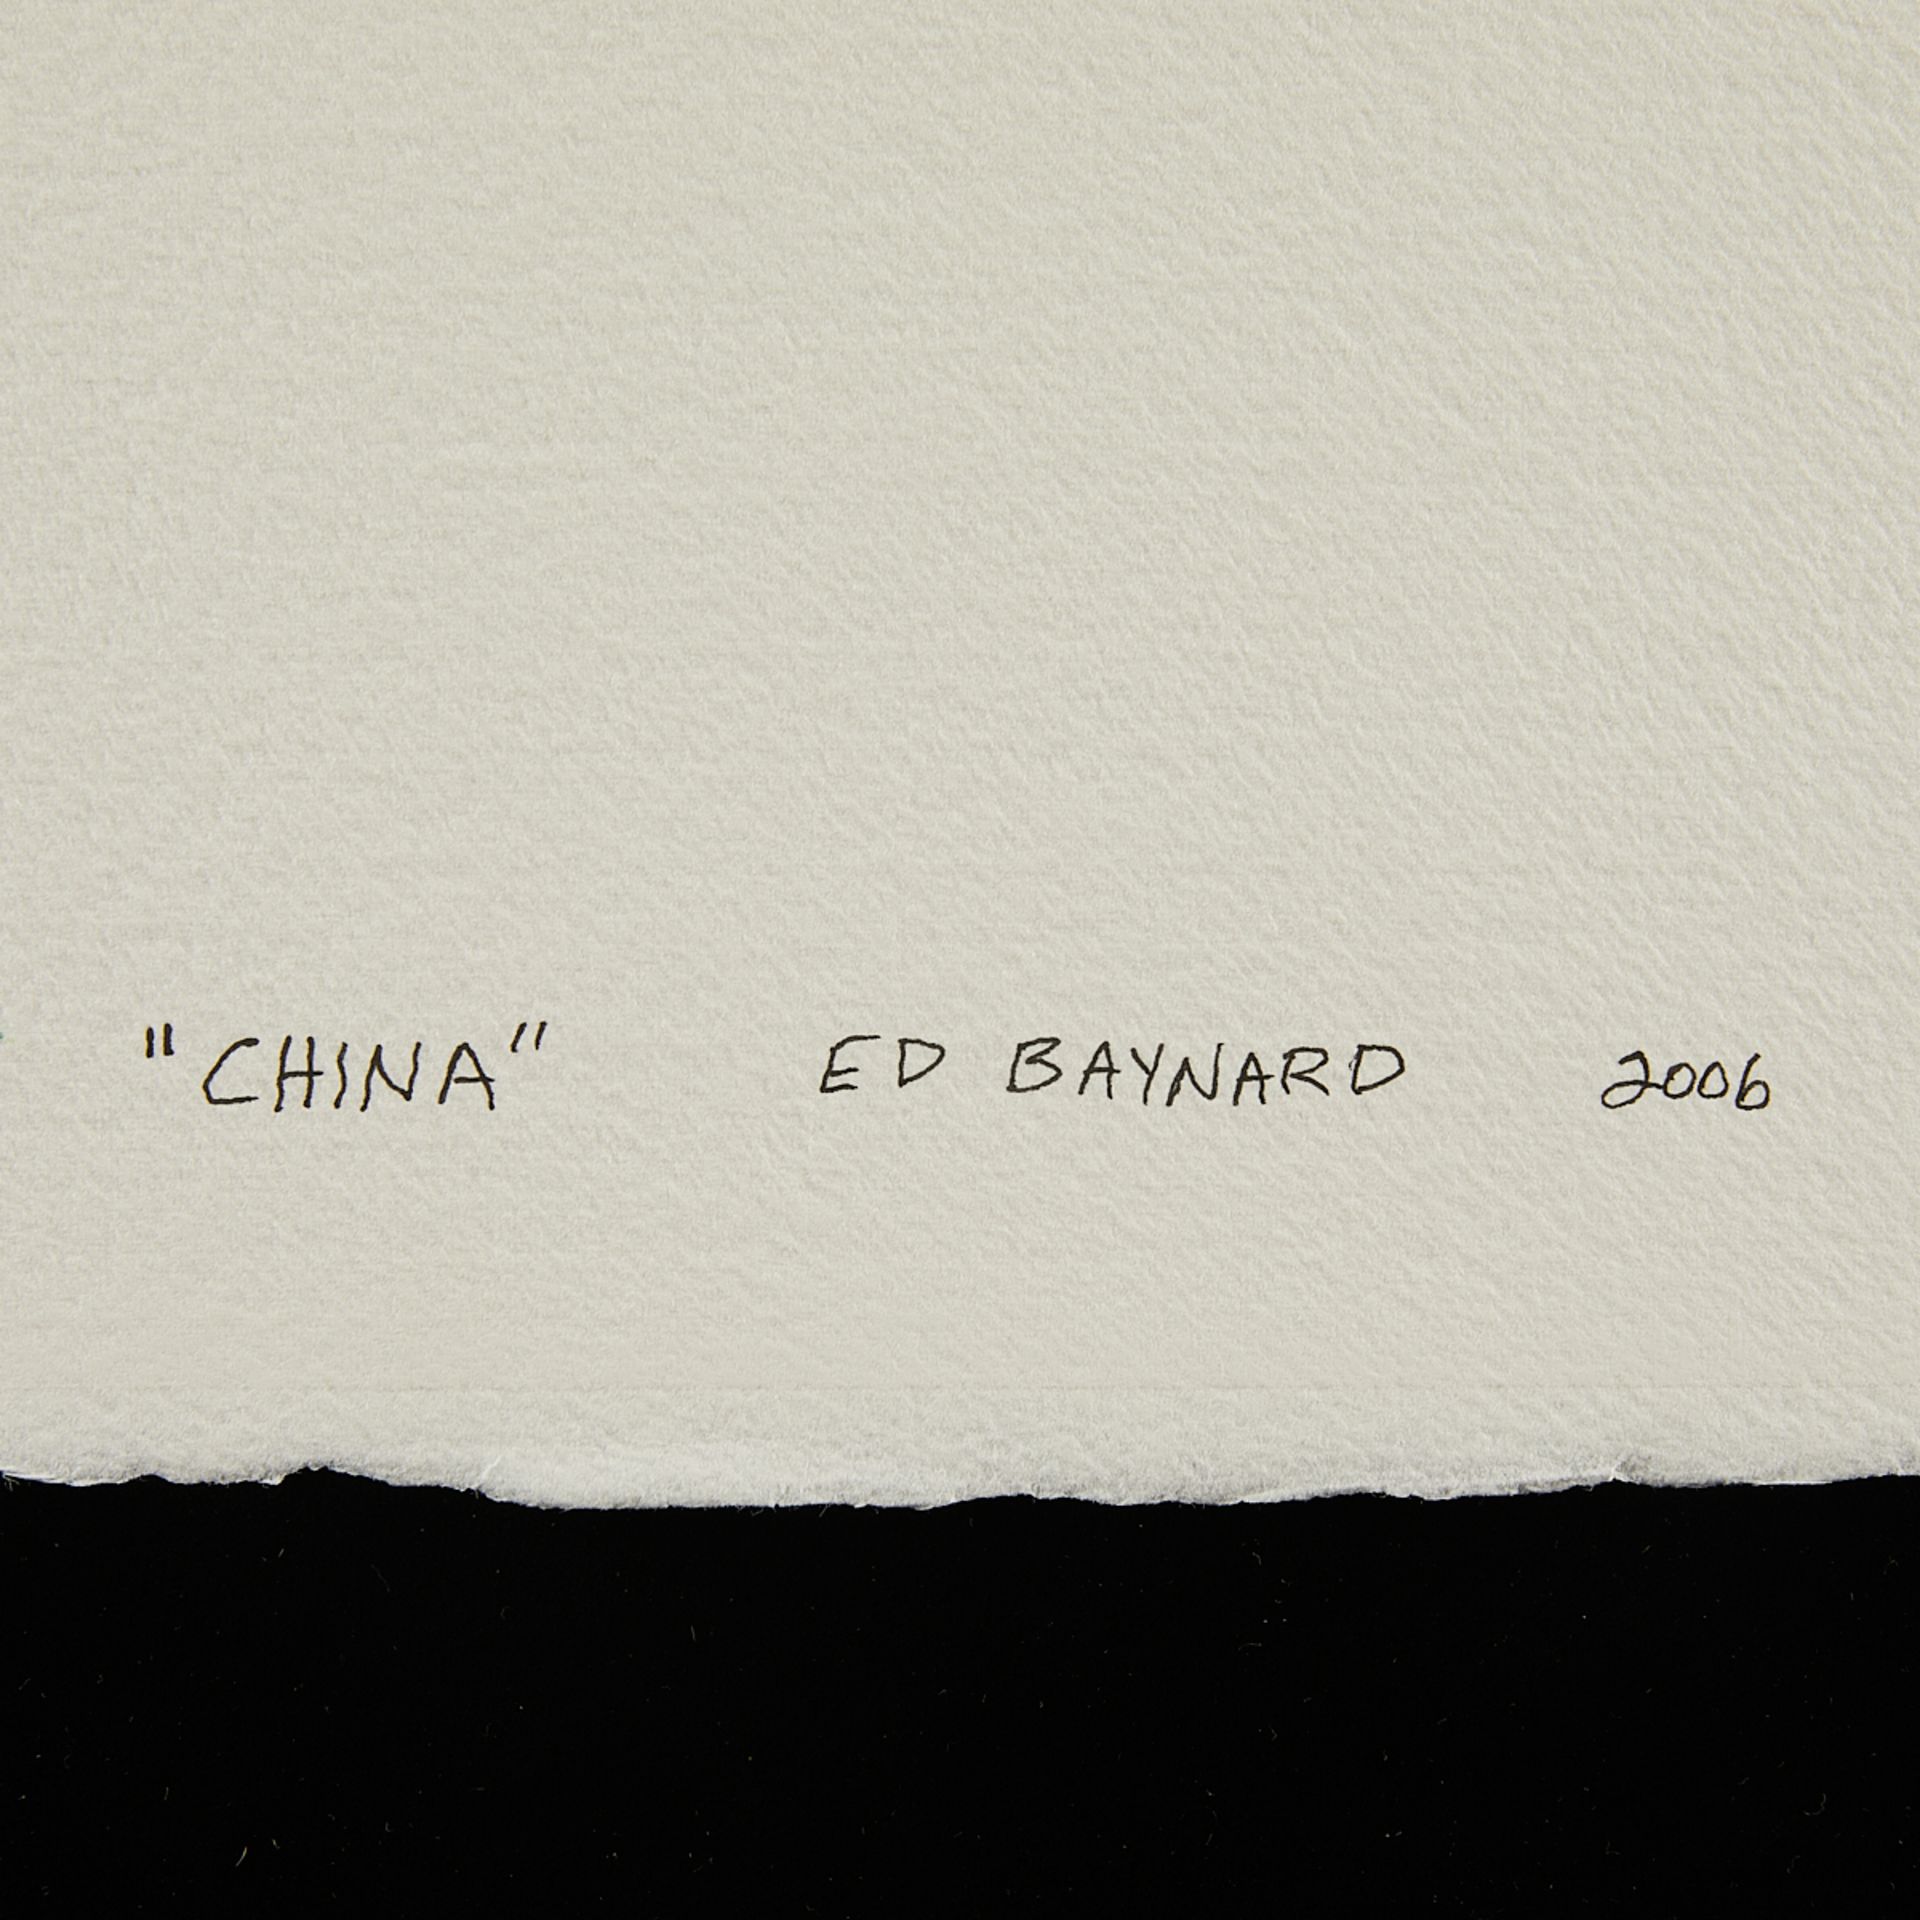 Ed Baynard "China" Watercolor Painting 2006 - Image 7 of 7